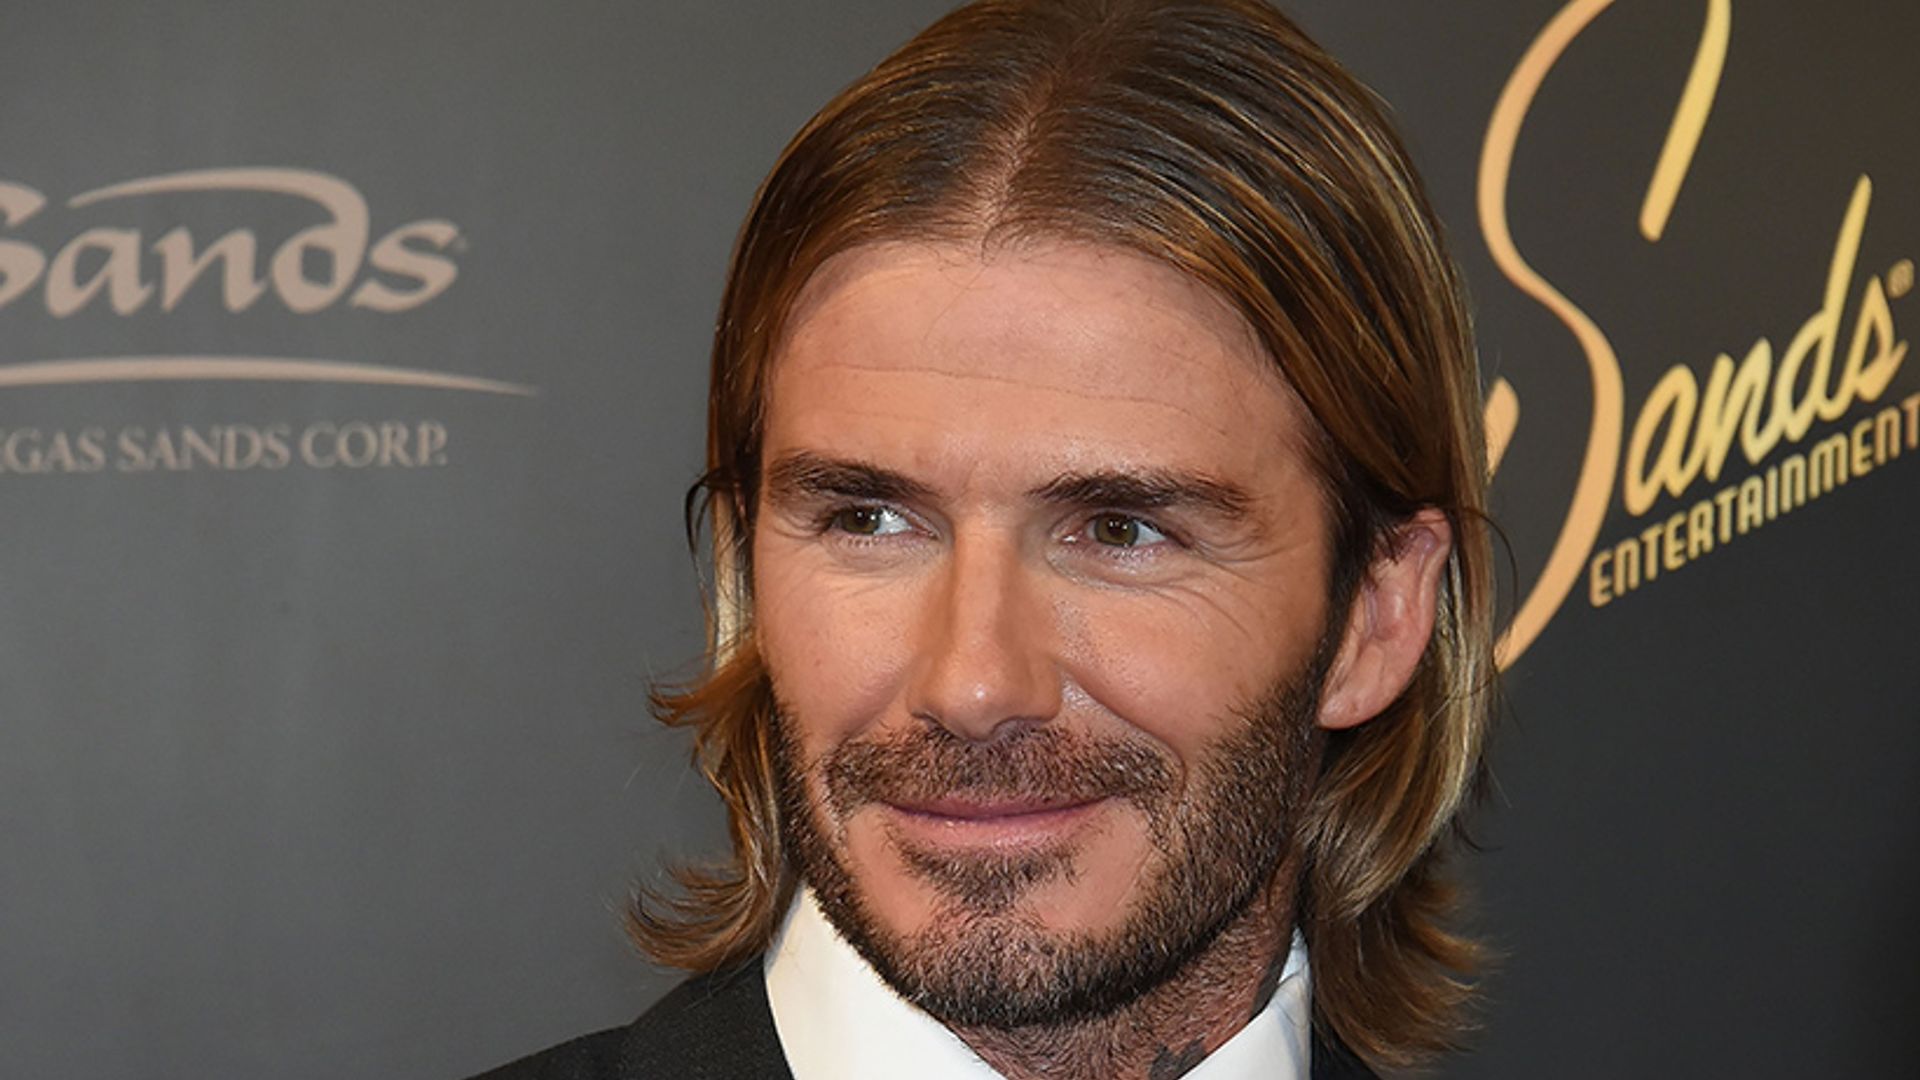 David Beckham Reveals New Shorter Haircut Hello